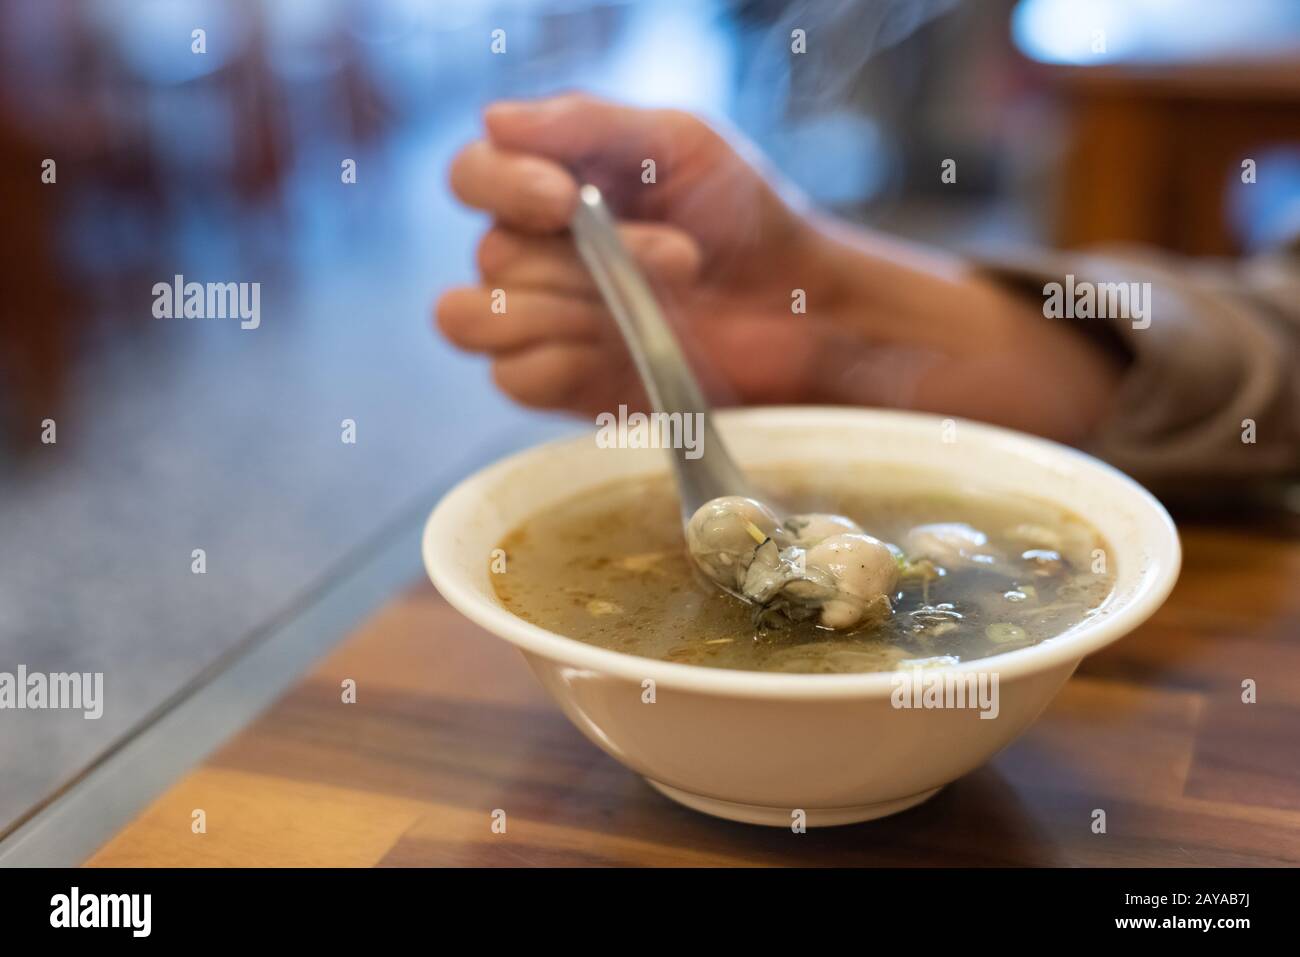 En-cas taïwanais traditionnels de soupe aux huîtres Banque D'Images